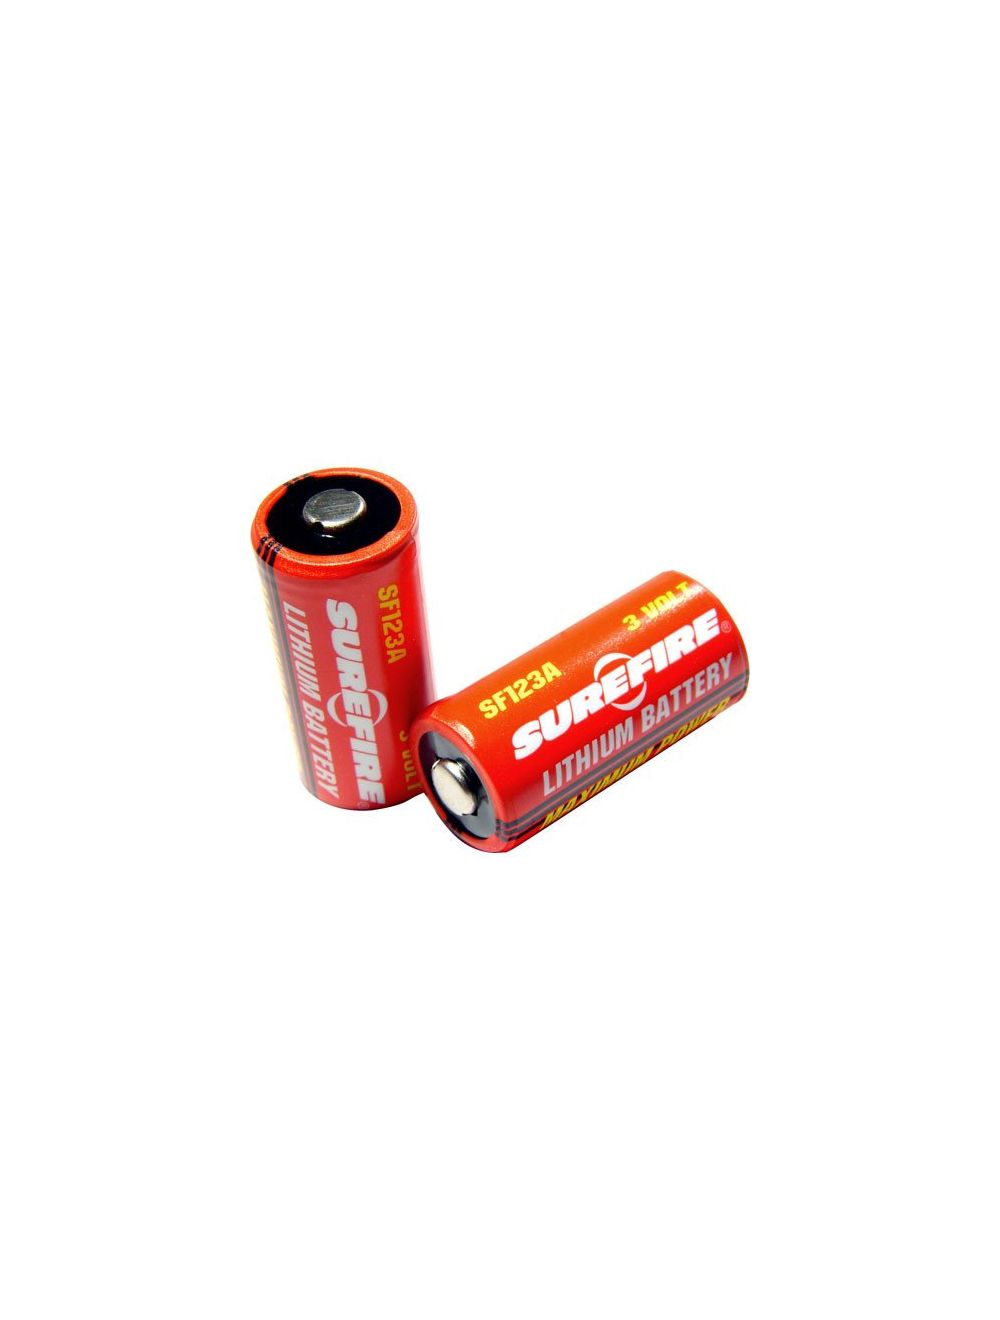 Surefire 123A Lithium Batteries